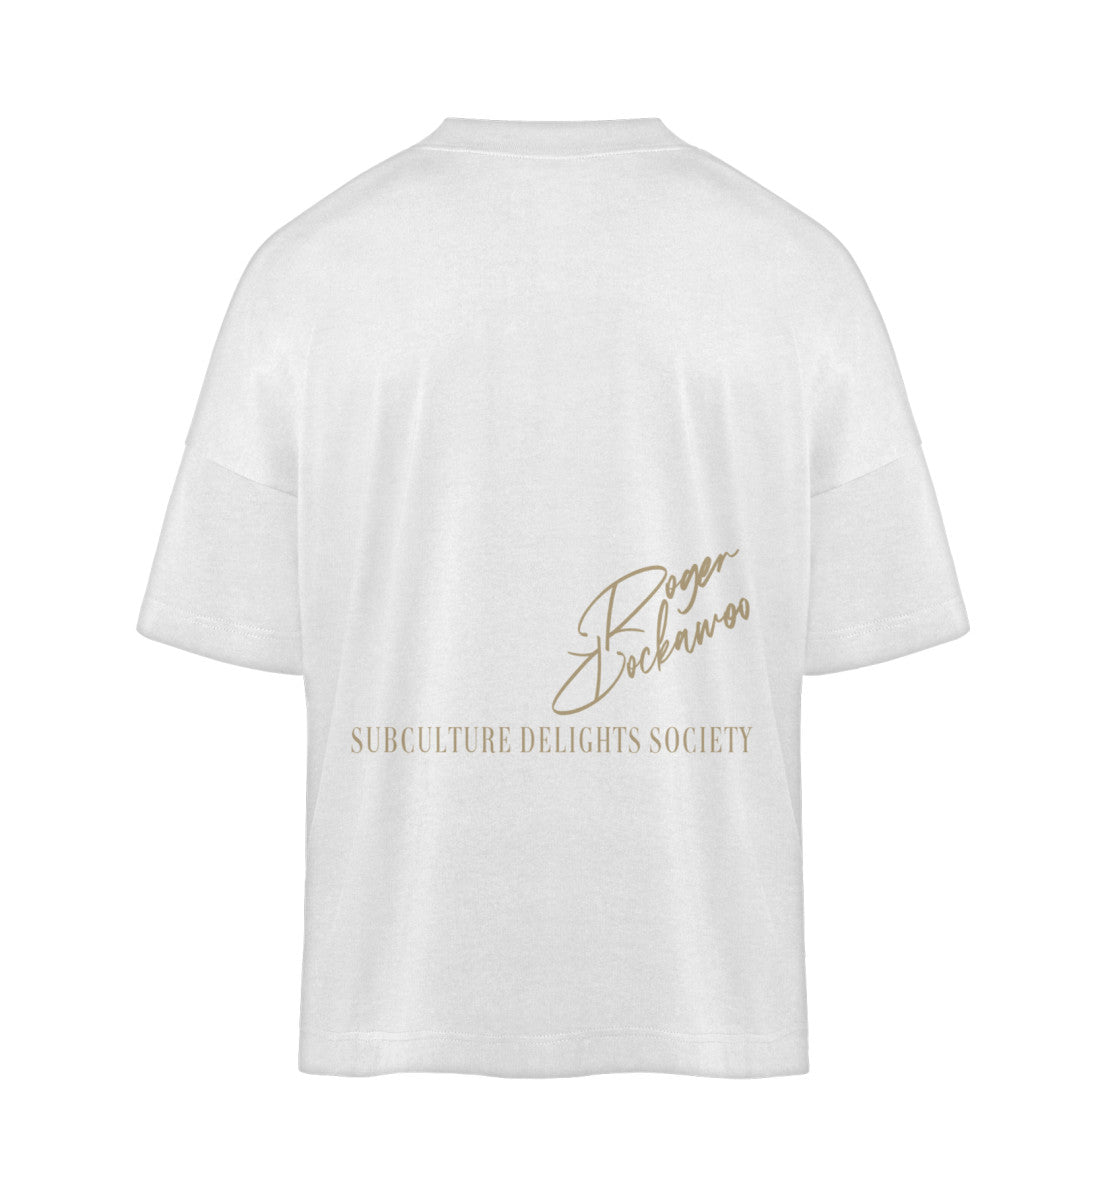 Weißes T-Shirt im Unisex Oversize Fit für Frauen und Männer bedruckt mit dem Design der Roger Rockawoo Kollektion help